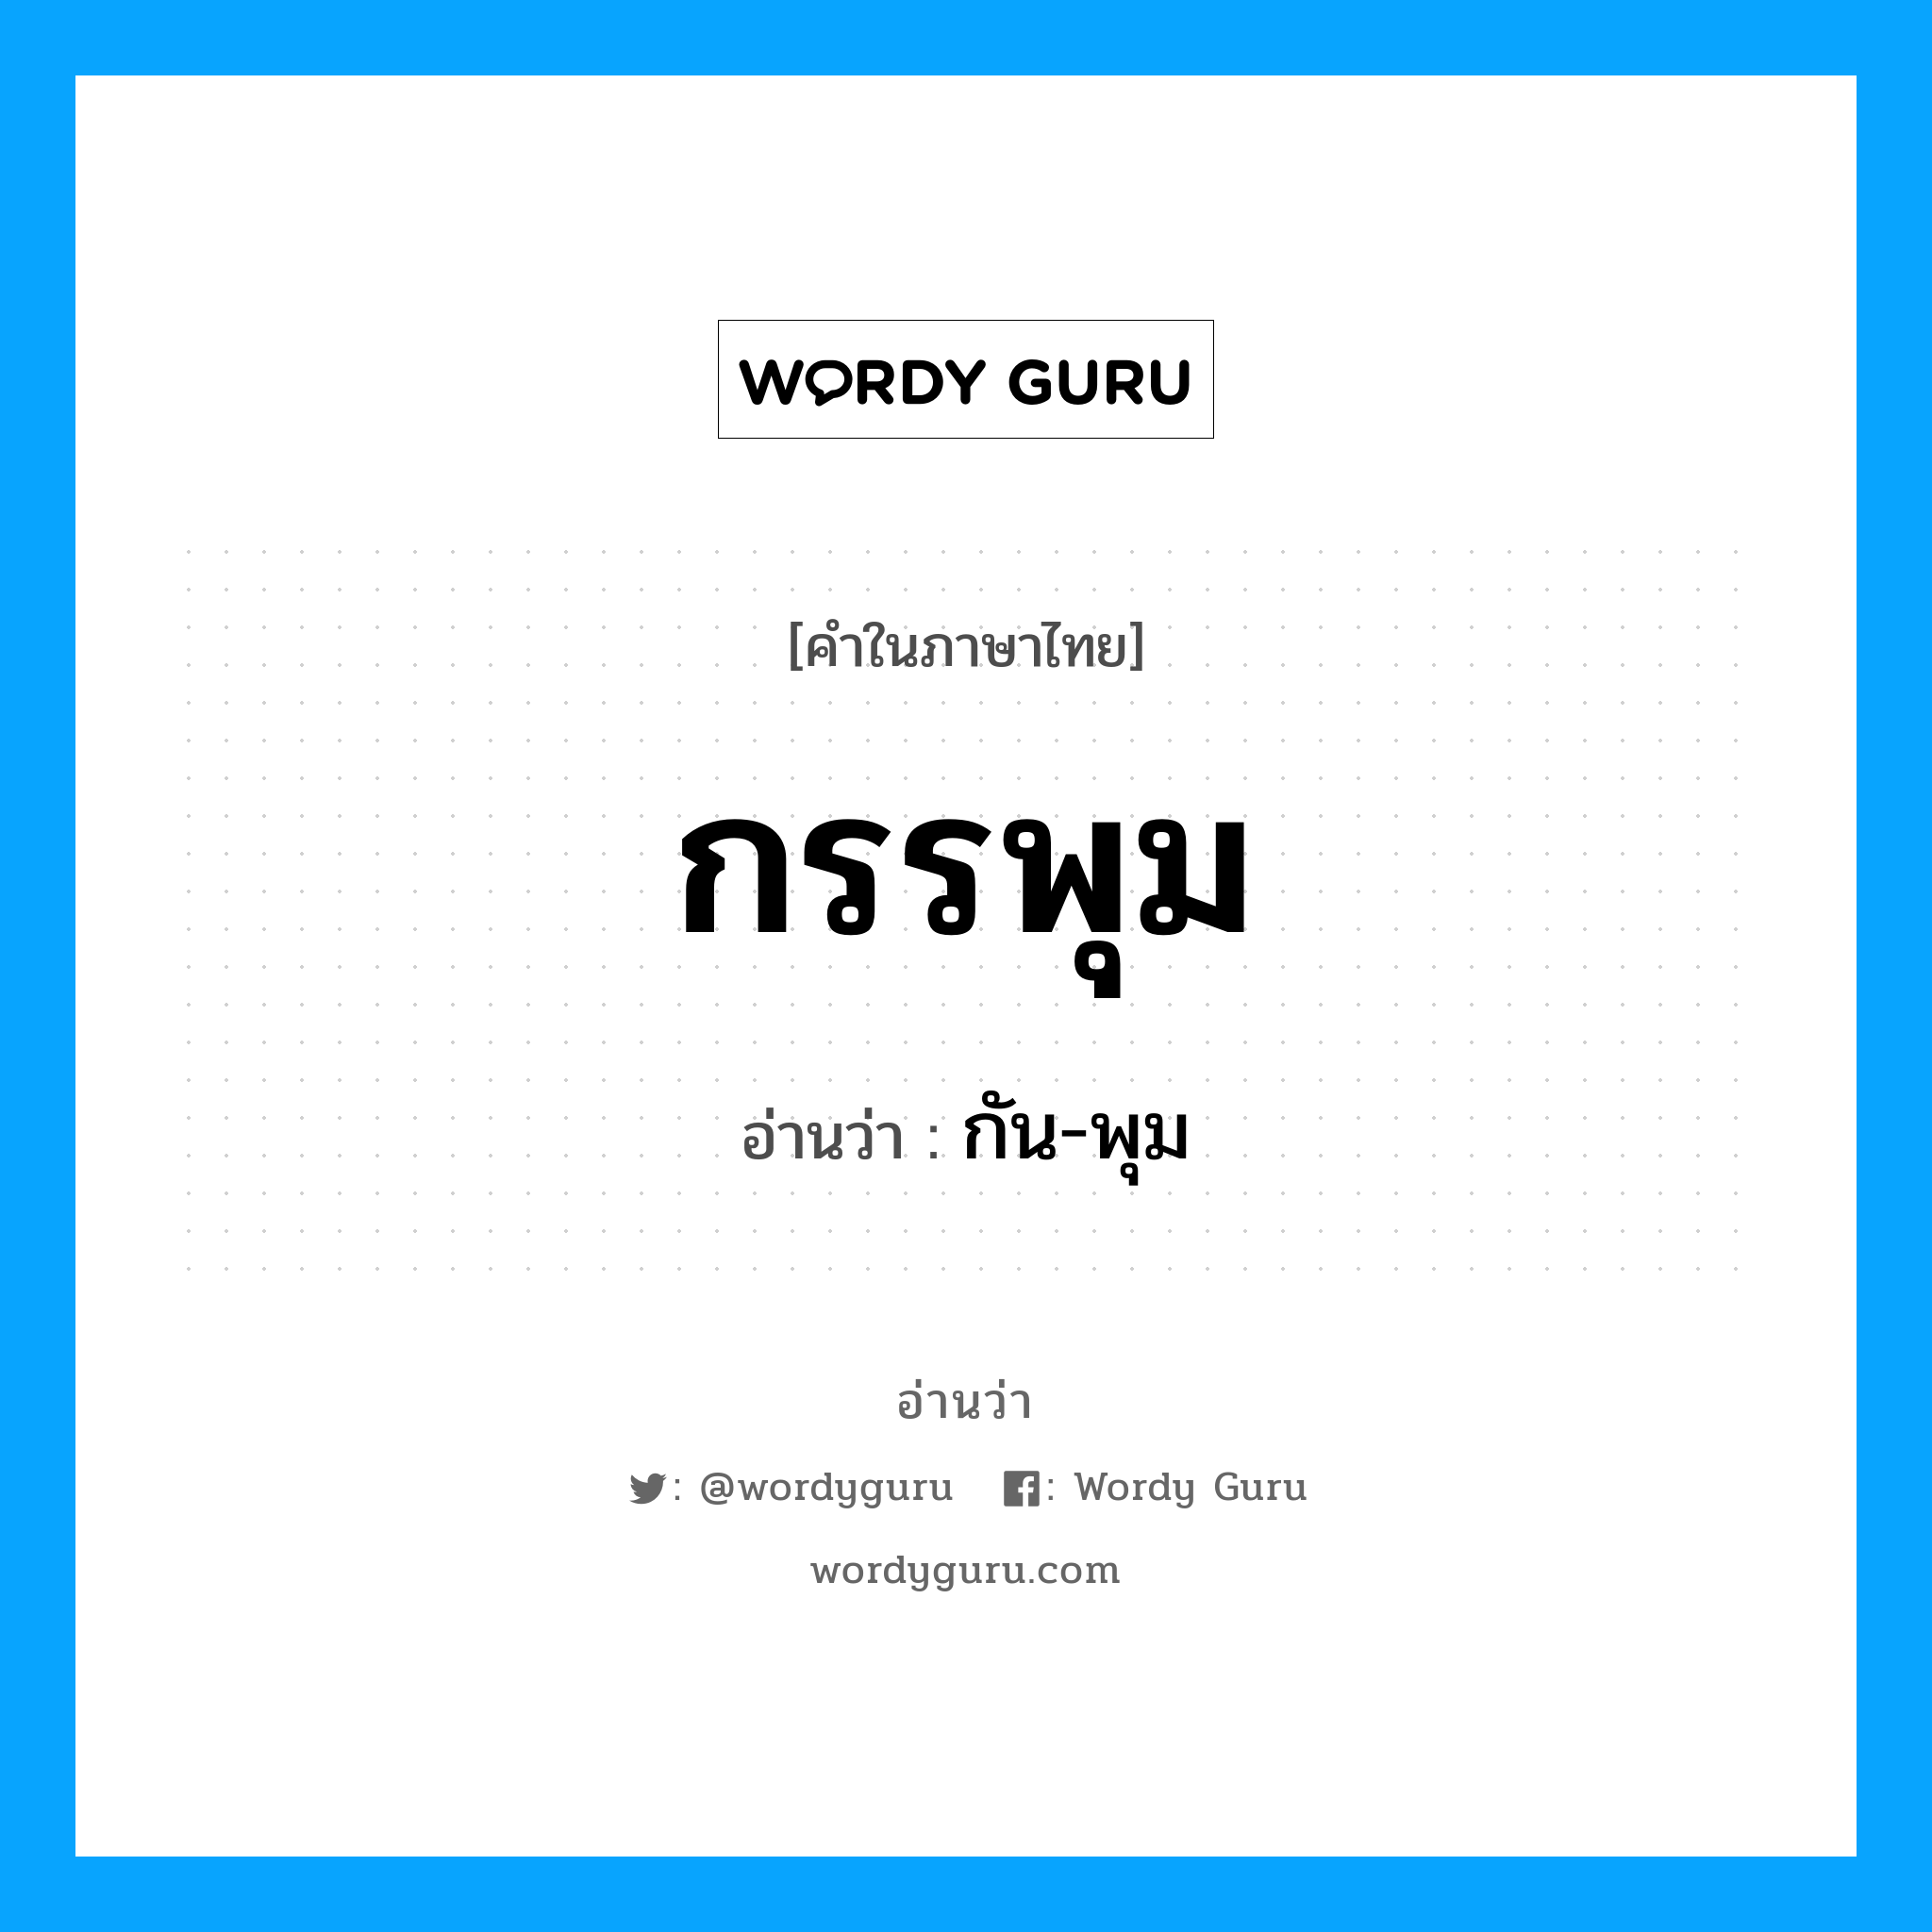 กัน-พุม เป็นคำอ่านของคำไหน?, คำในภาษาไทย กัน-พุม อ่านว่า กรรพุม